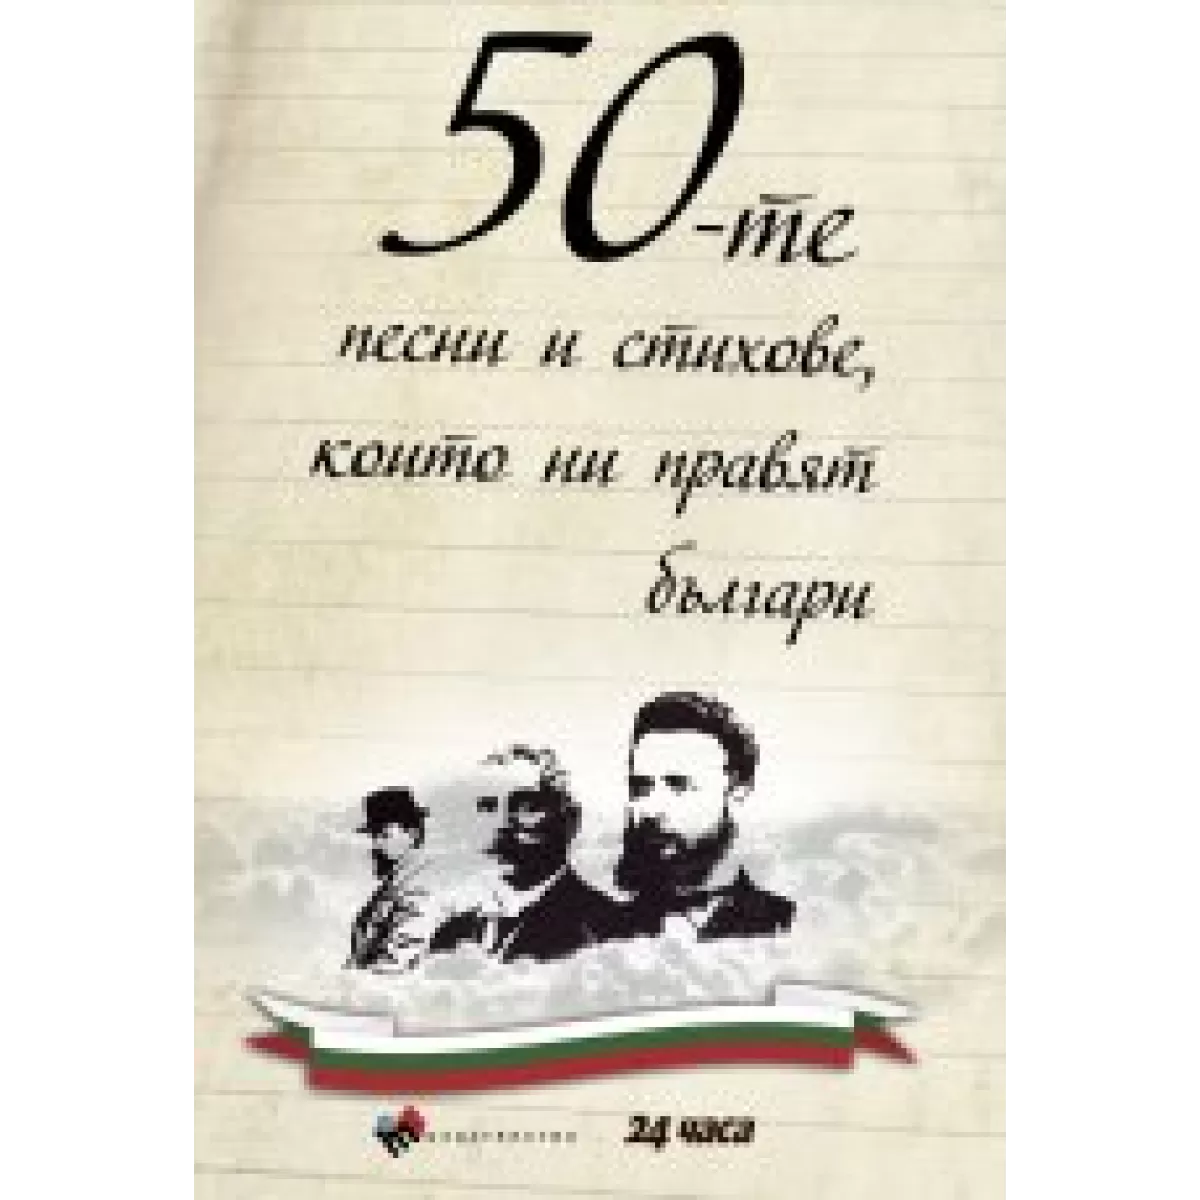 50-те песни и стихове, които ни правят българи